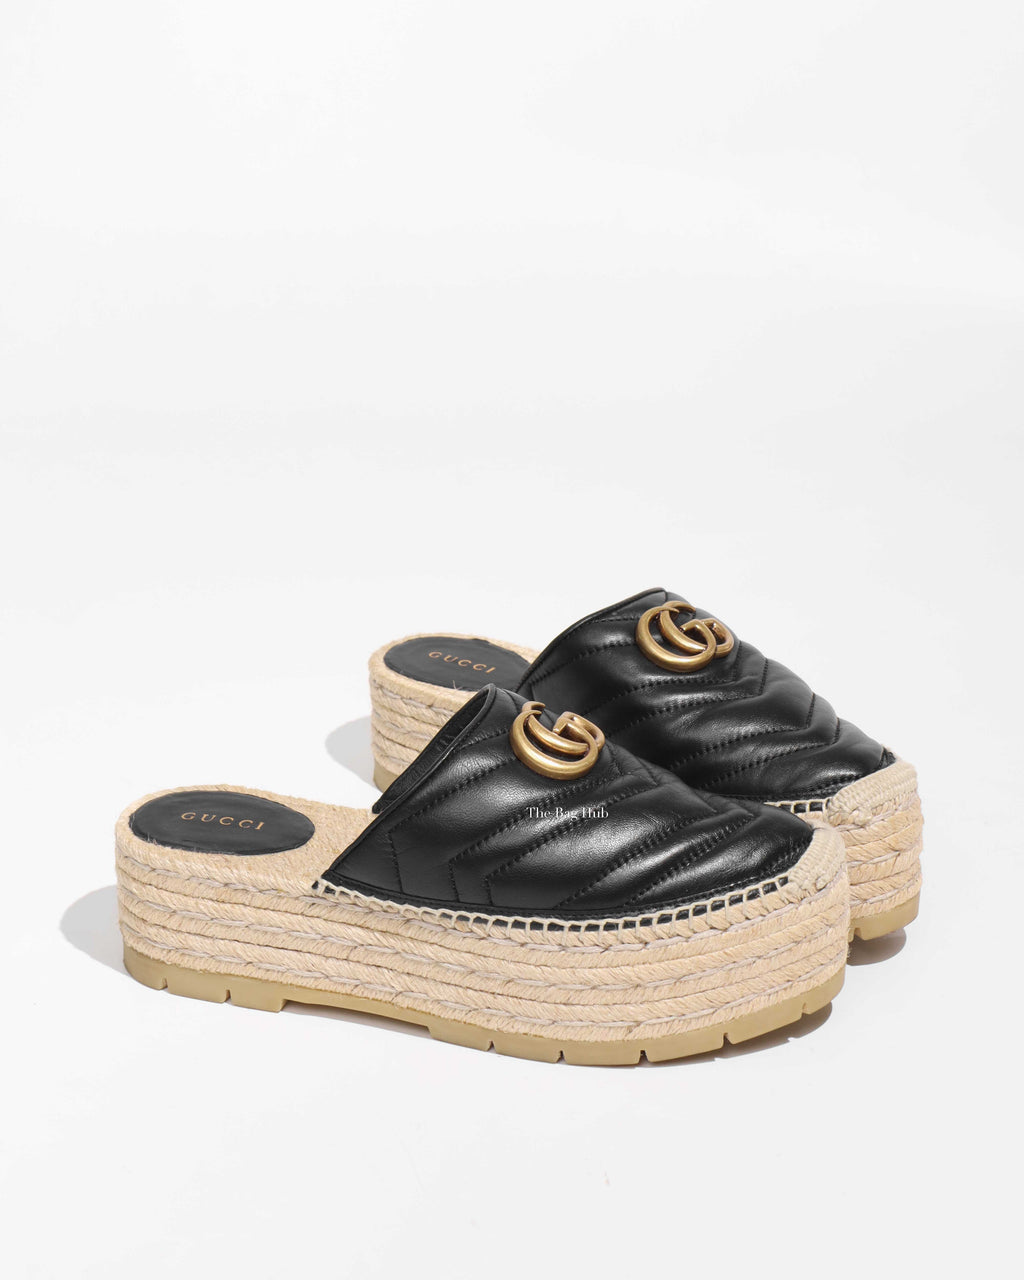 Gucci Black Pilar Leather GG Marmont Platform Espadrilles Mules Size 37